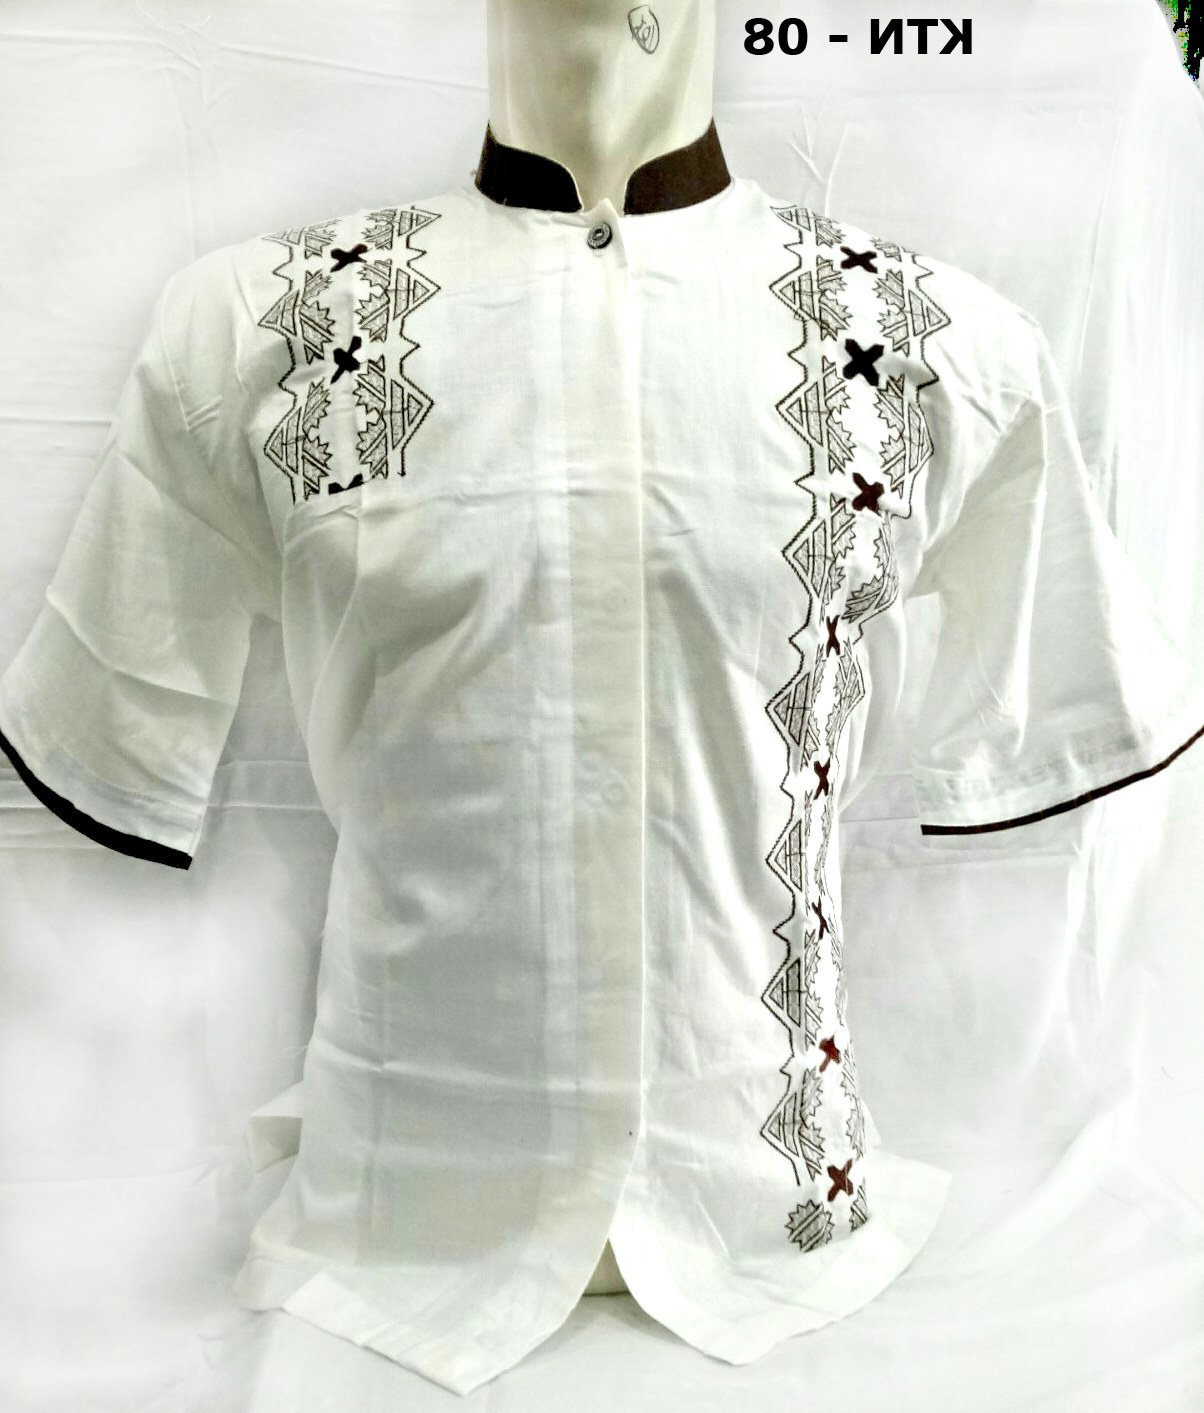 Design Model Baju Lebaran Warna Putih U3dh Model Baju Koko Terbaru Lebaran 2018 Lengan Pendek Murah